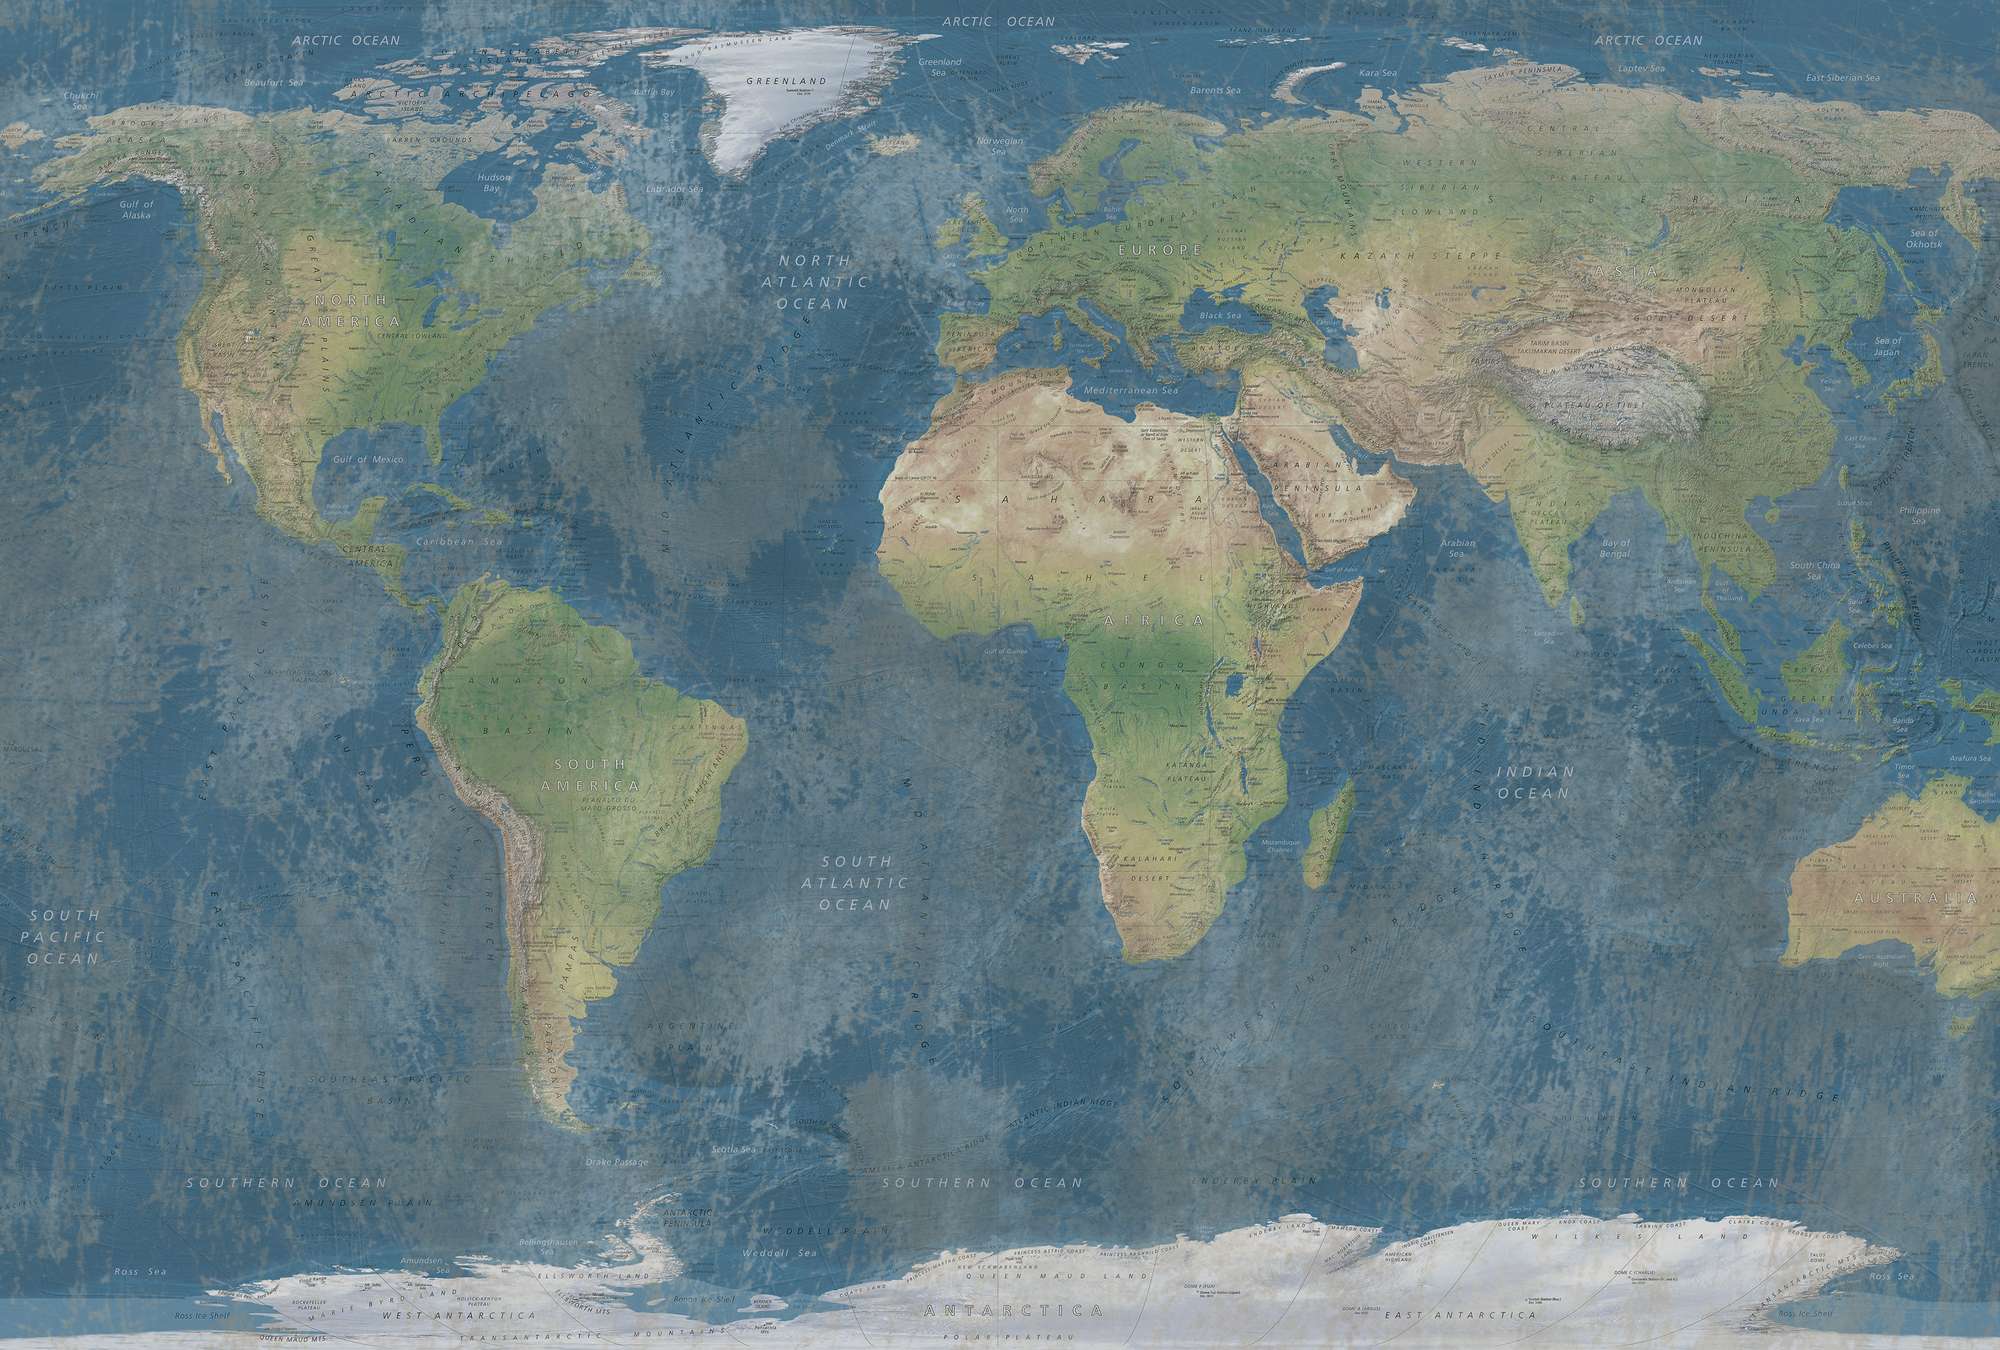             Muurschildering wereldkaart in natuurlijke kleuren
        